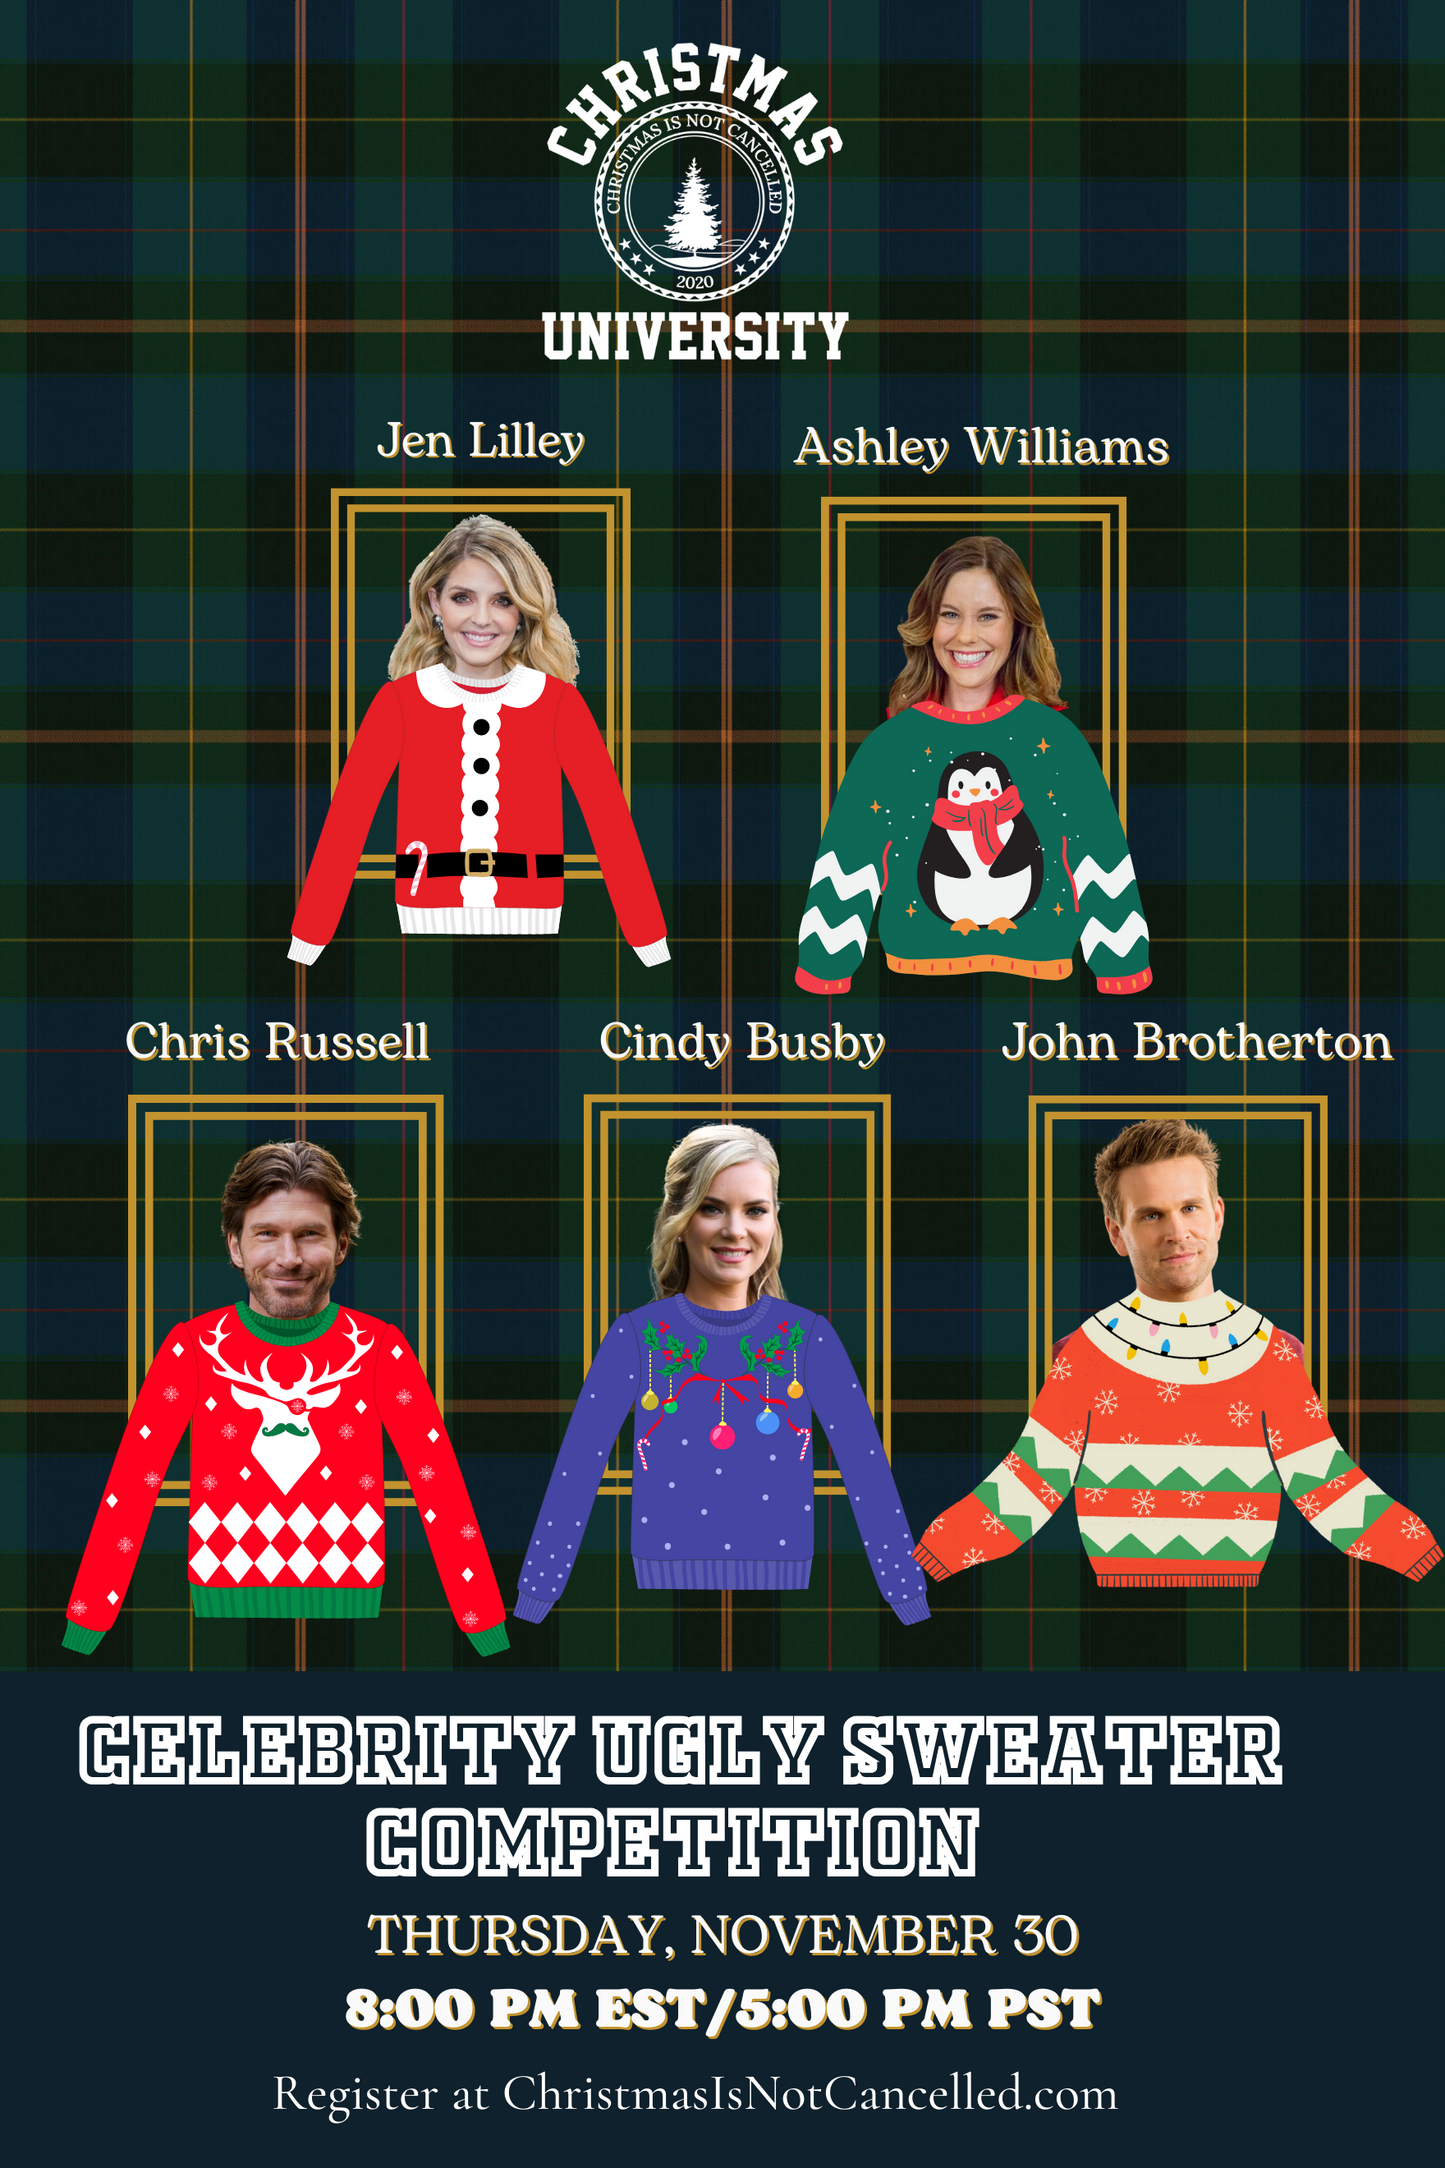 Christmas University 23: Celebrity Christmas Sweater Smackdown (Thursday, November 30)